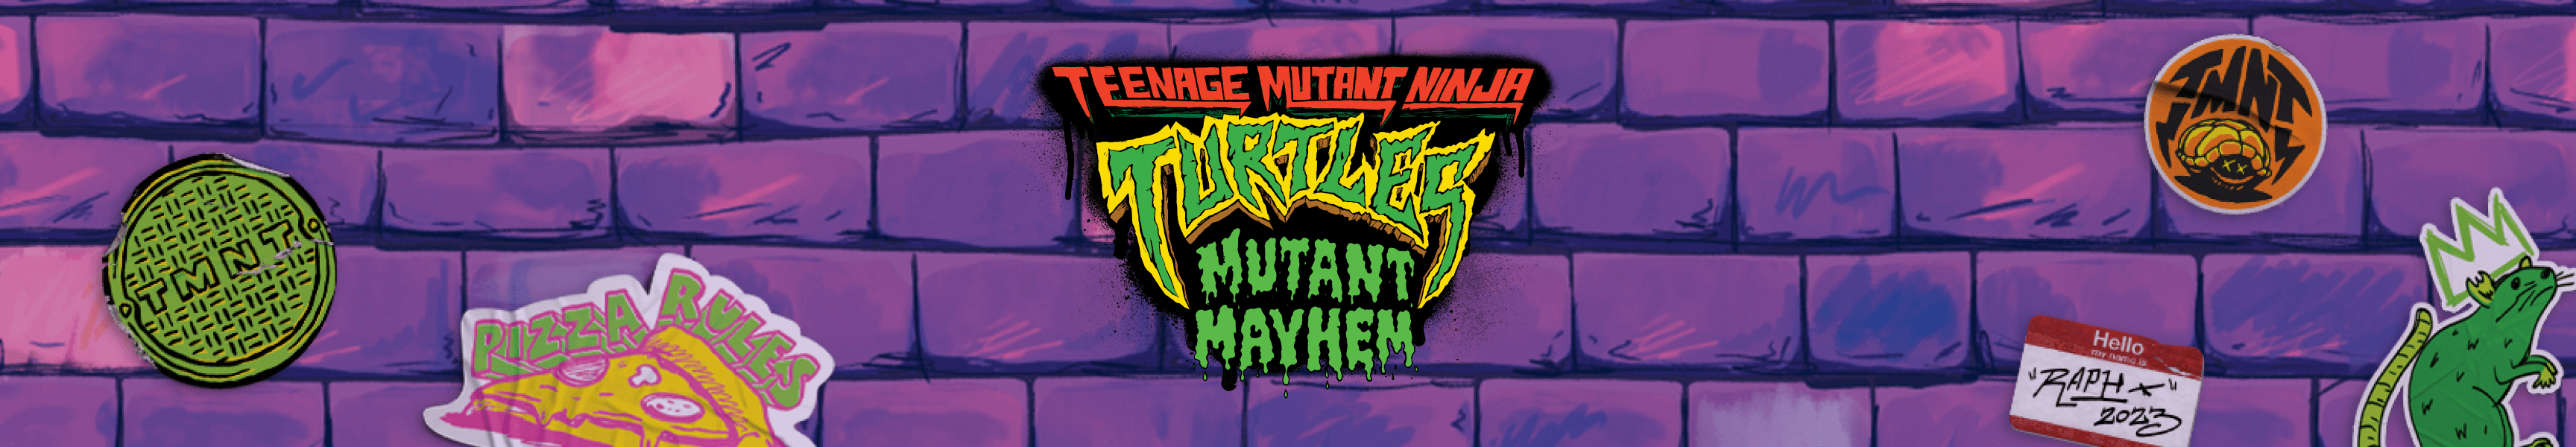 Teenage Mutant Ninja Turtles: Caos mutante